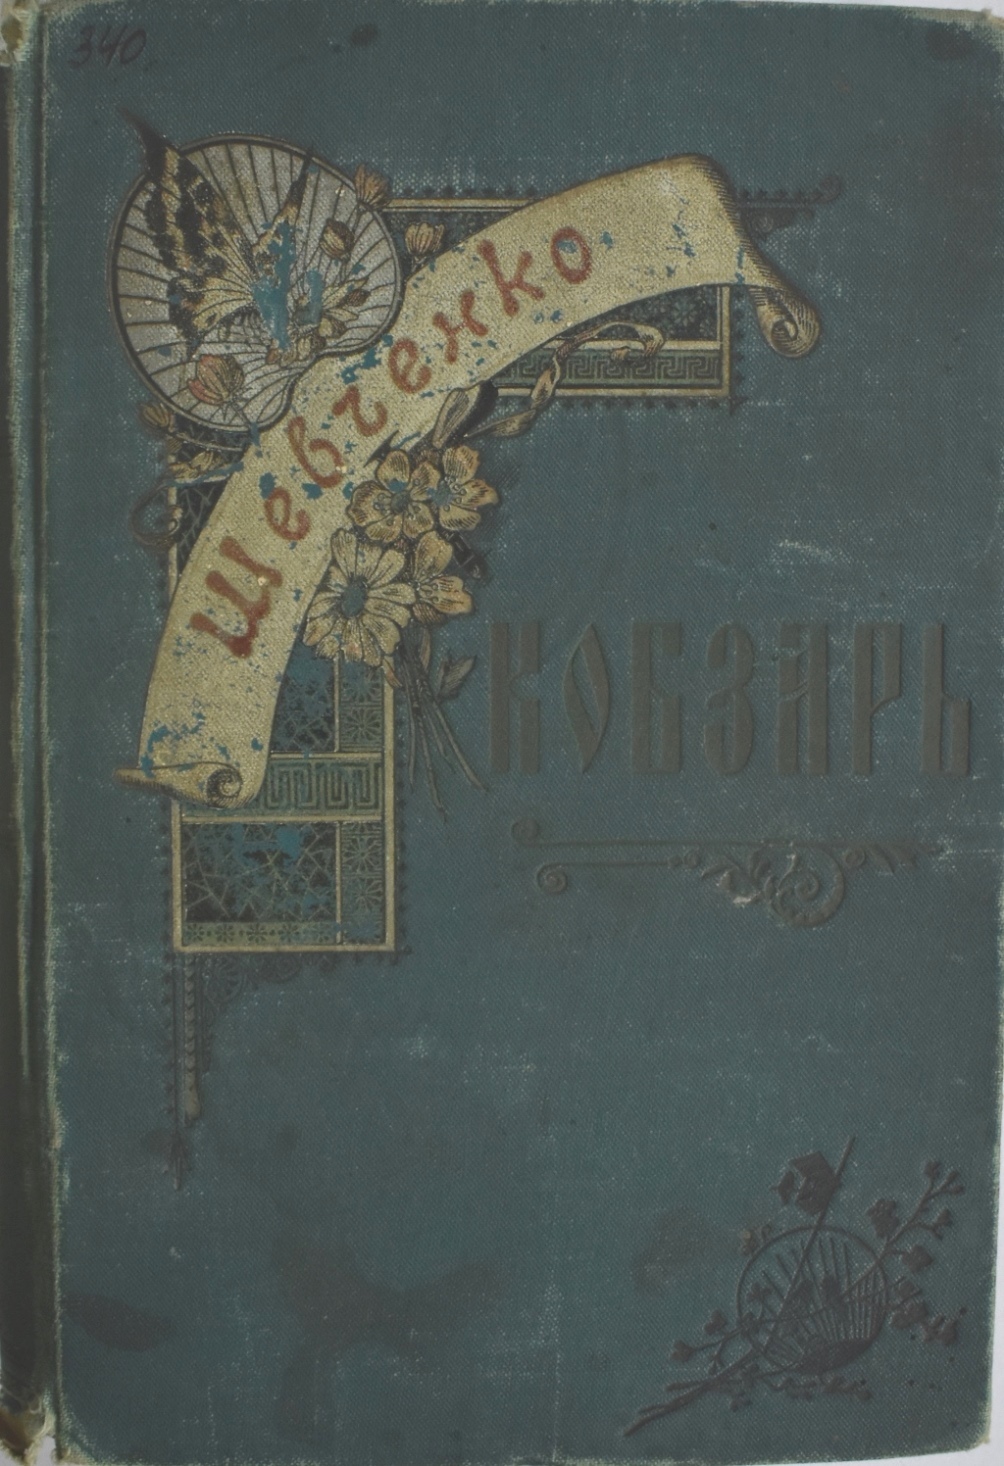 Книга Т. Г. Шевченко "Кобзарь", 1894 р.